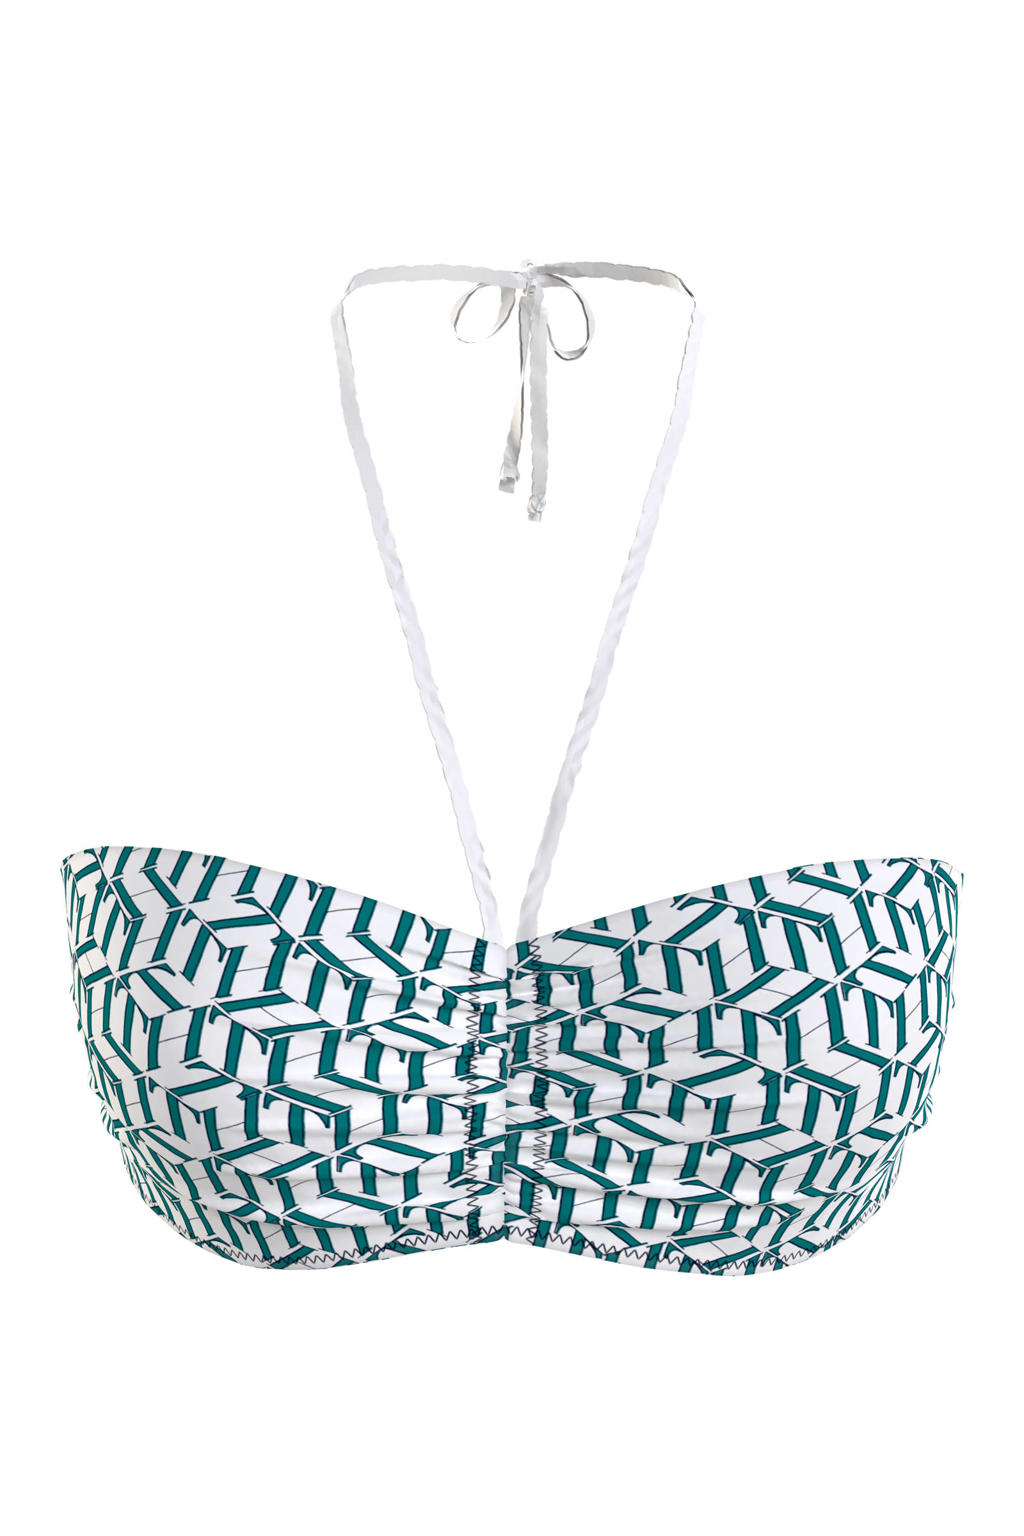 Tommy Hilfiger niet-voorgevormde bandeau bikinitop met all over print wit/groen